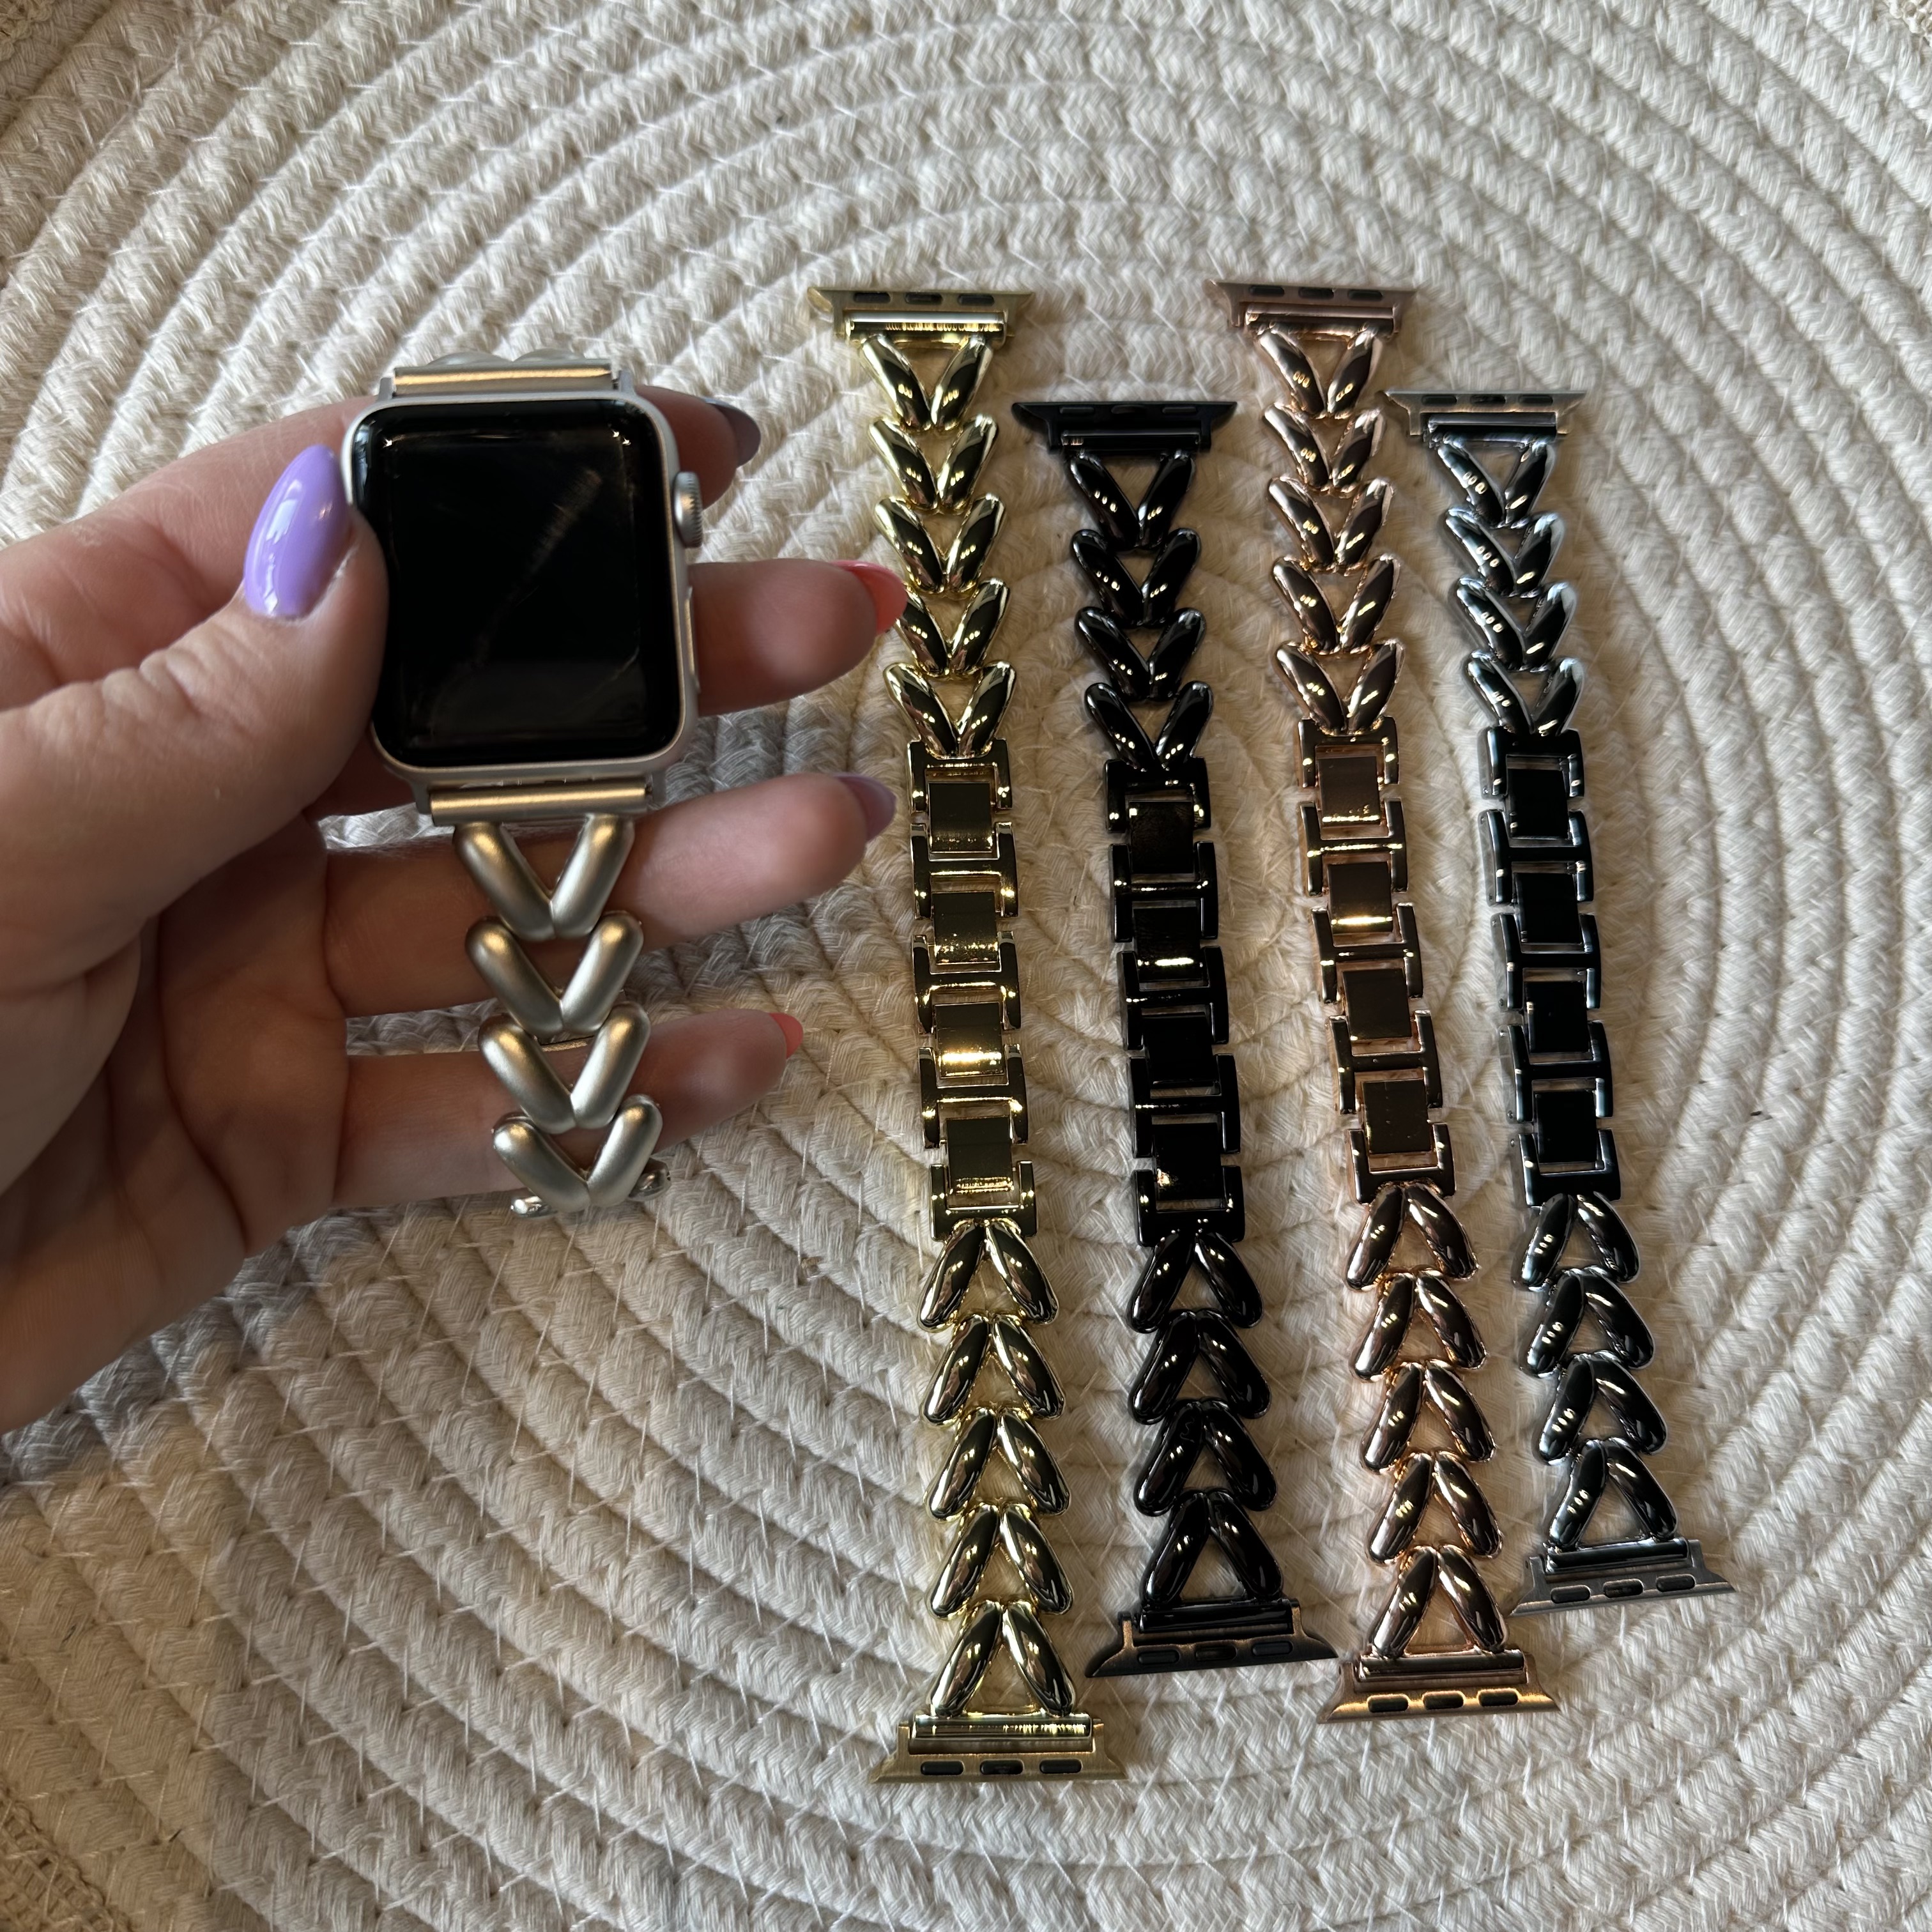 Correa de eslabones de acero con forma de corazón para Apple Watch - Lisa plata